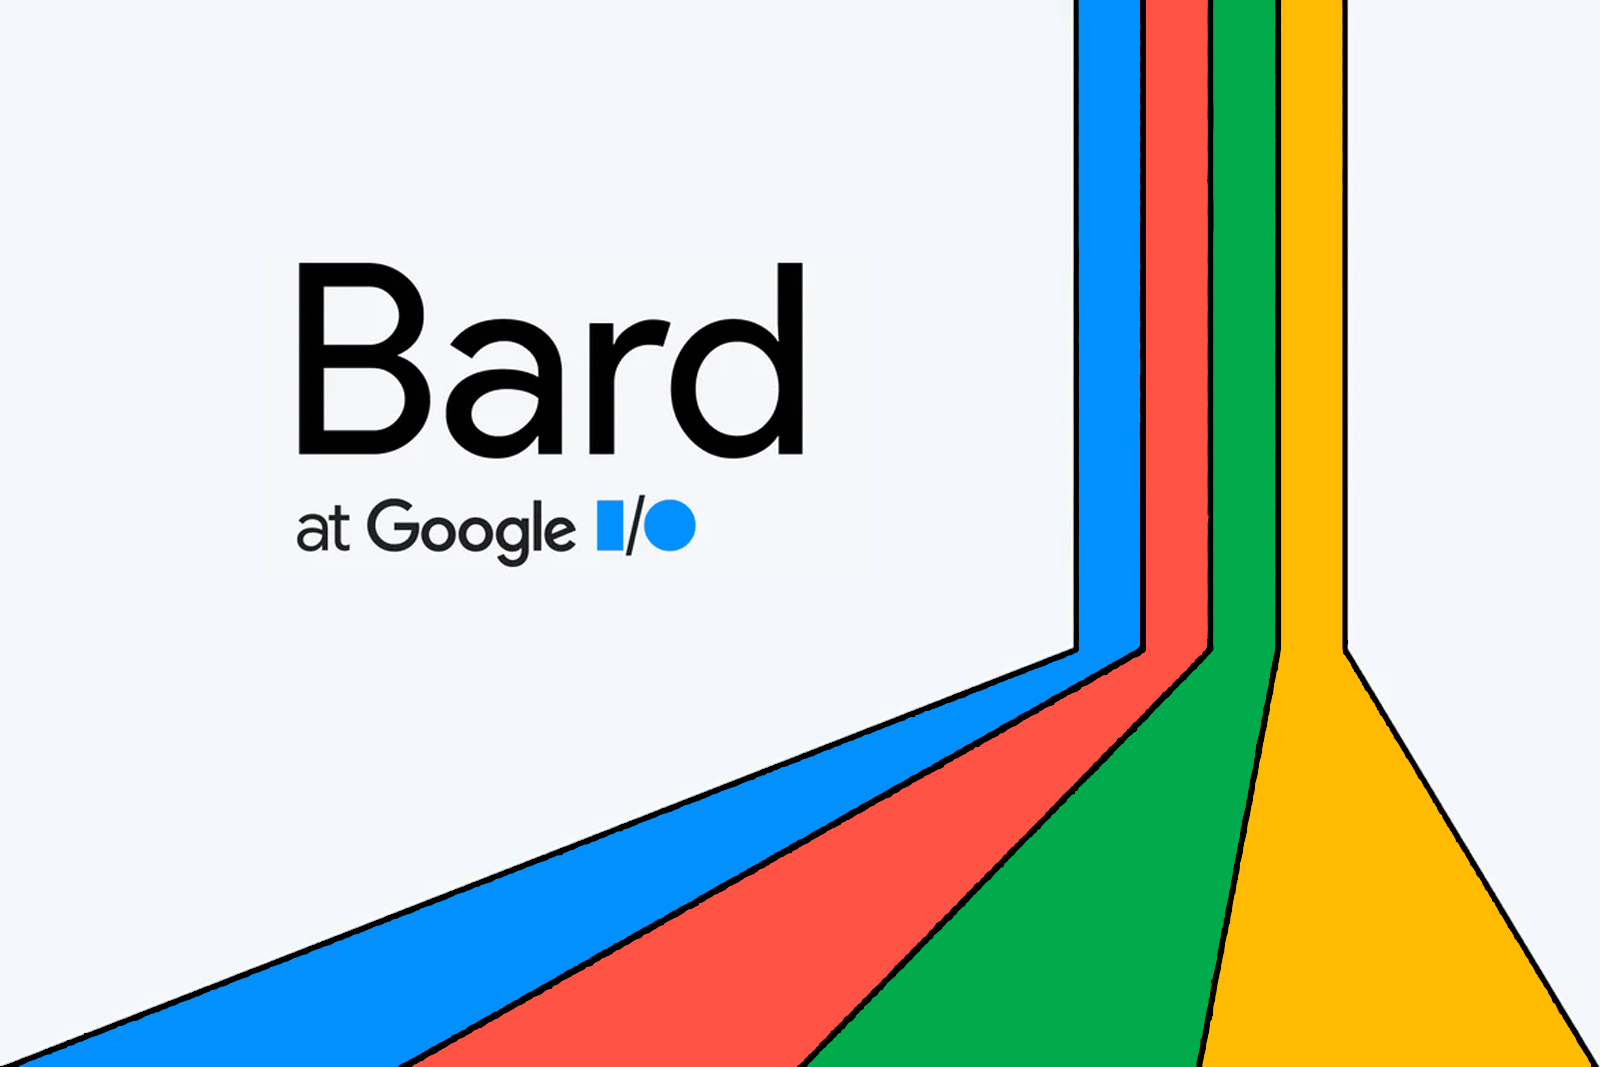 Google’s Bard